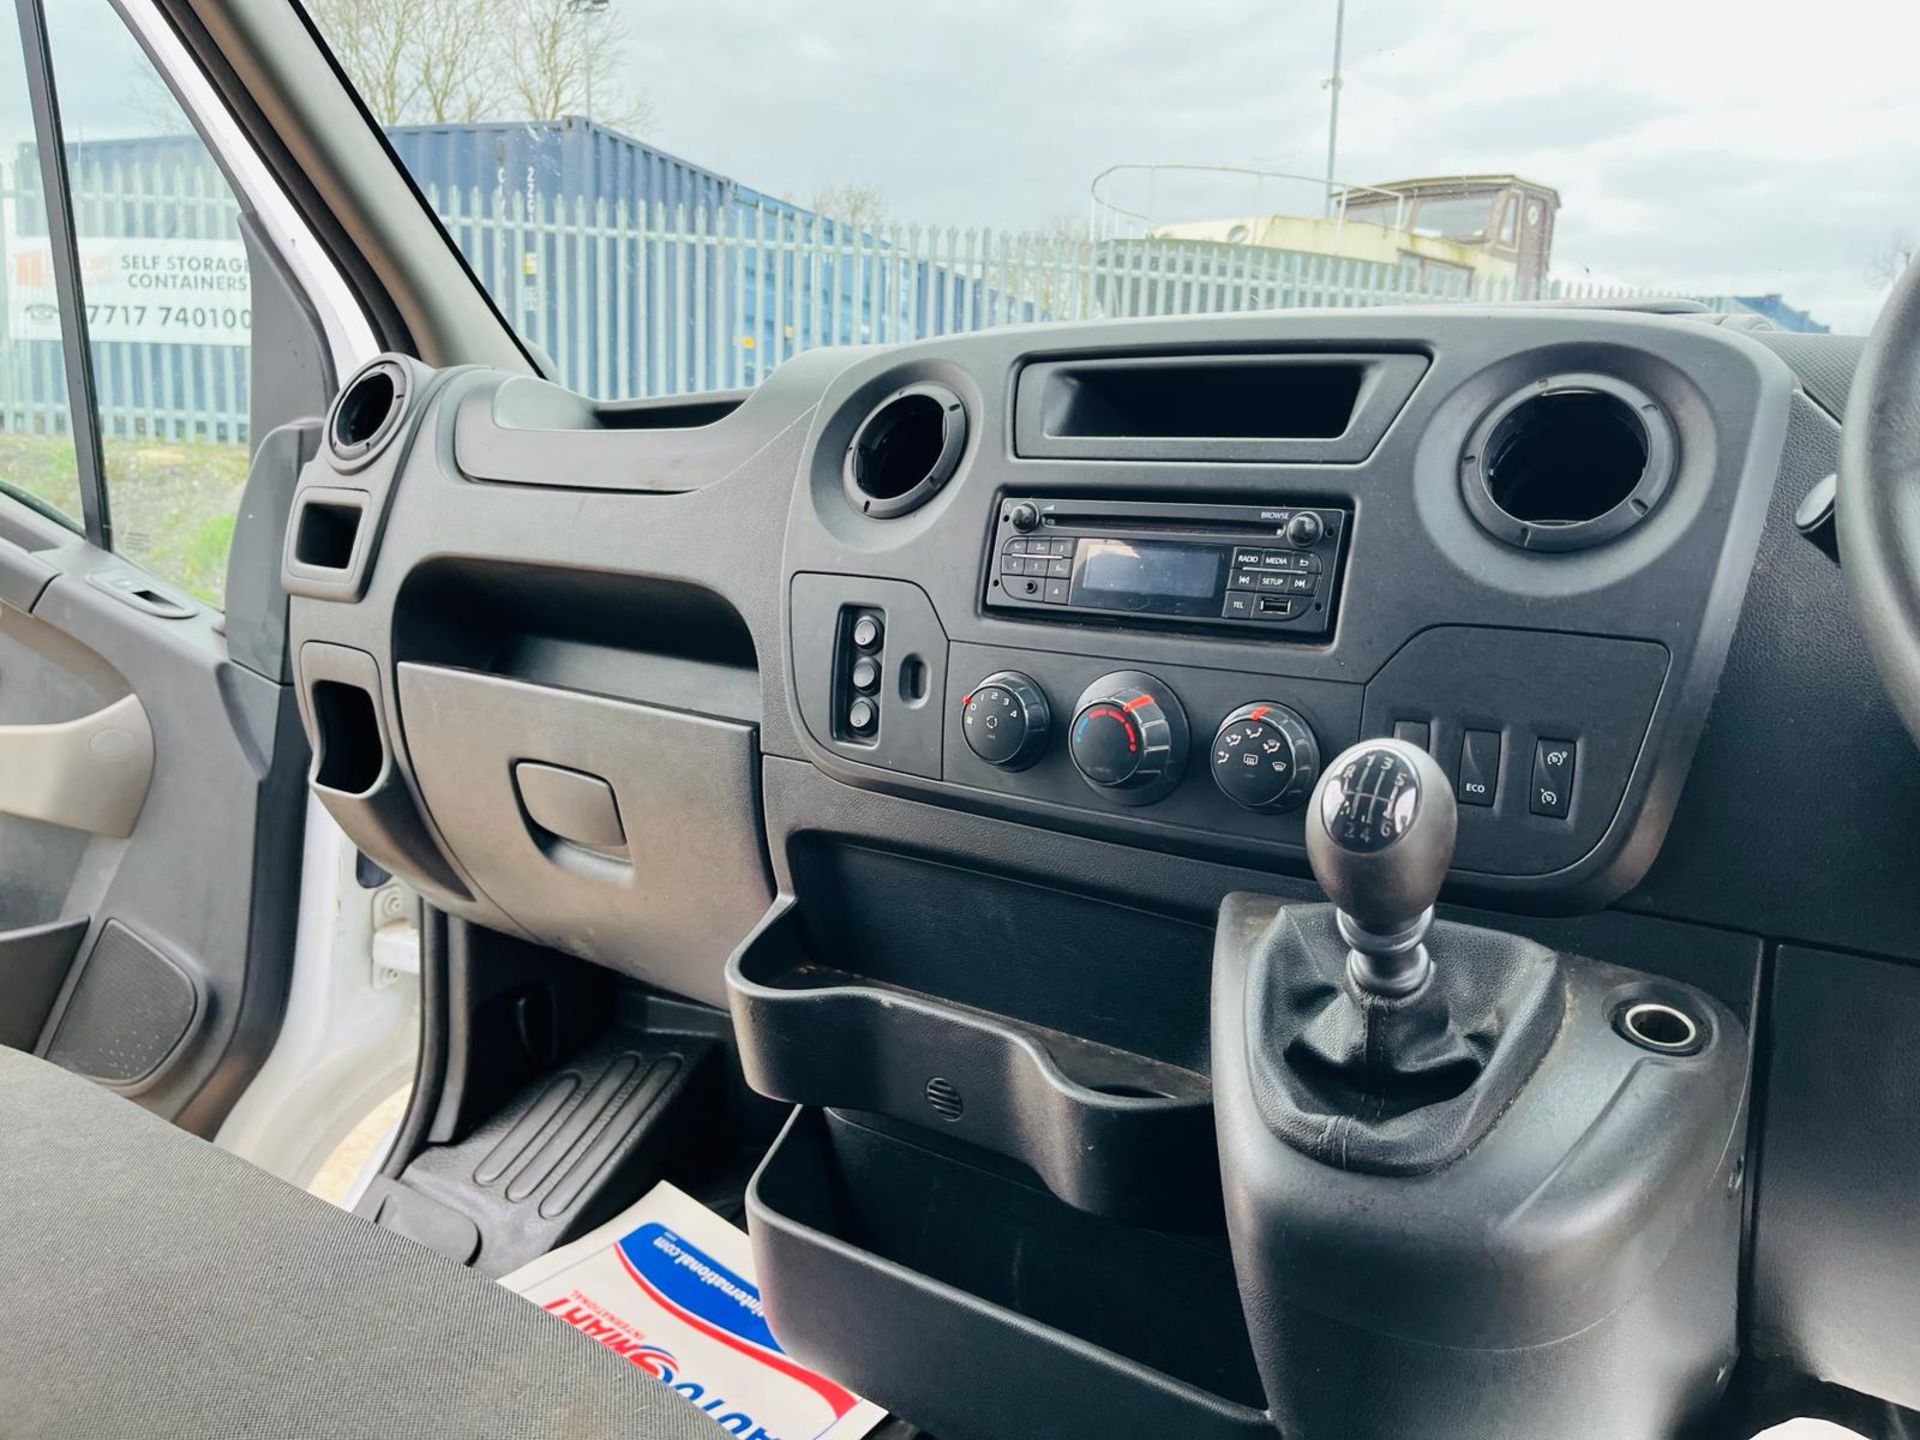 Nissan NV400 Dropside Crew Cab SE 2.2 DCI 130 L3 H1 2019 '68 Reg'-ULEZ Compliant - Dropside Body - Image 16 of 30